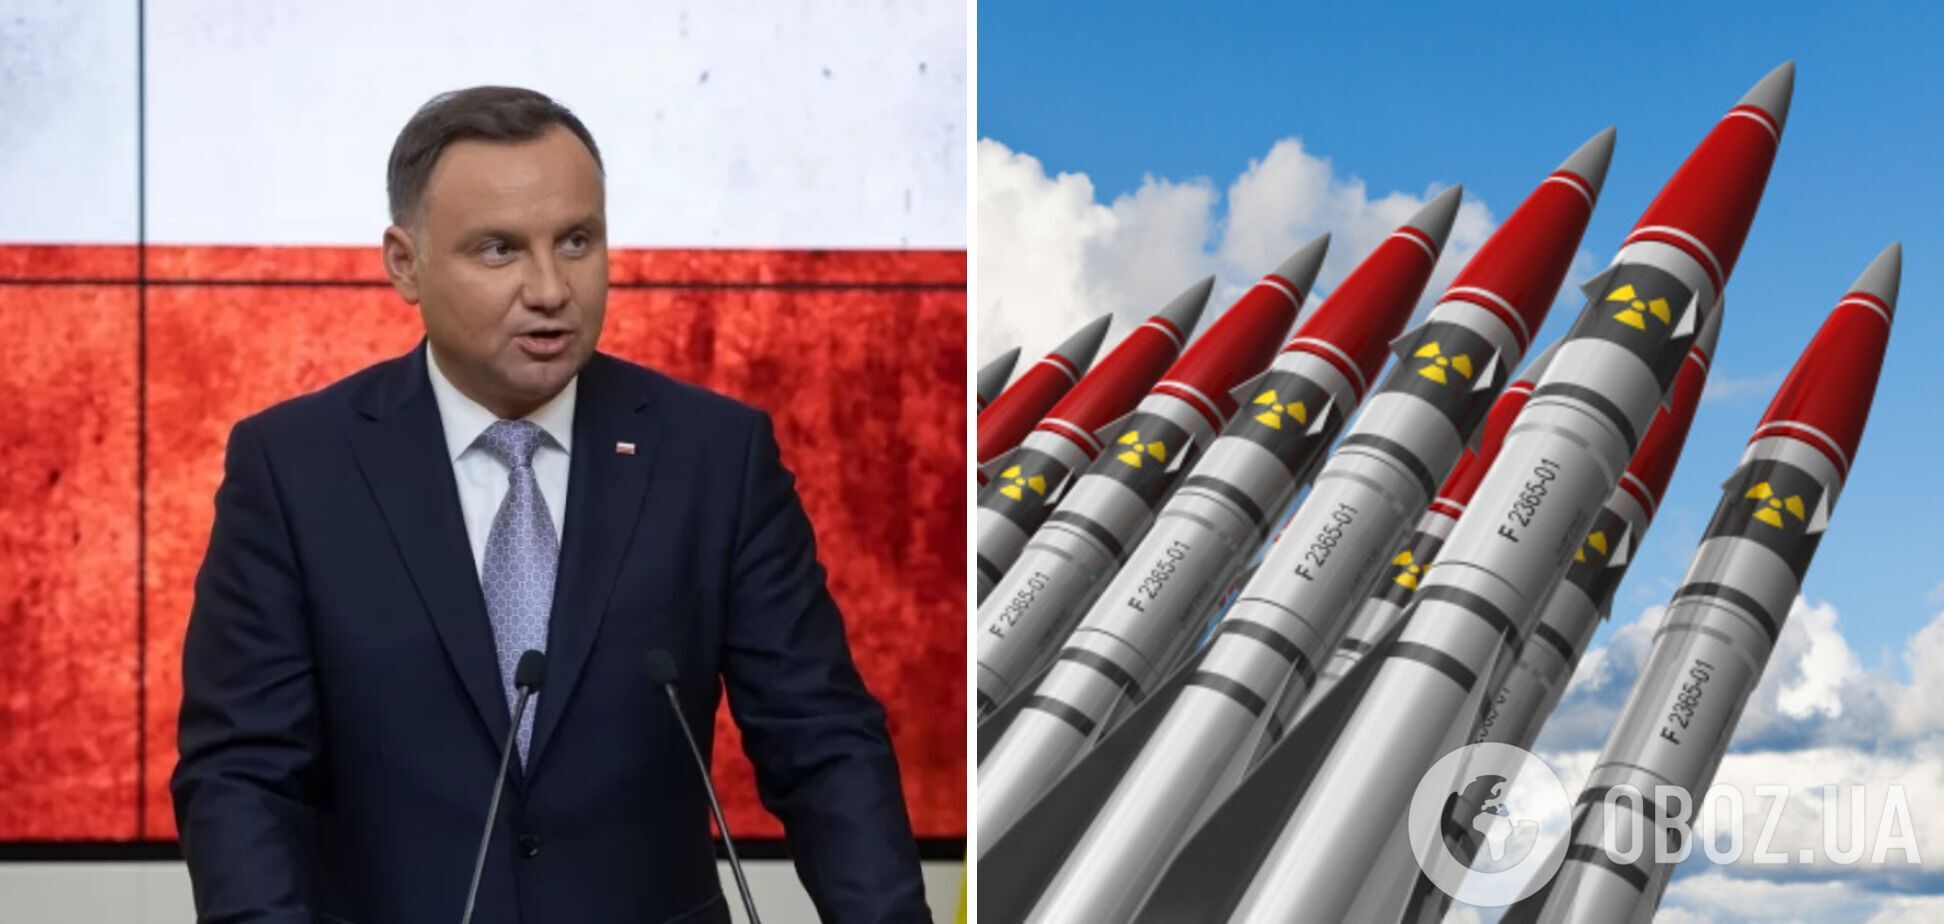 Польща обговорює із США розміщення ядерної зброї